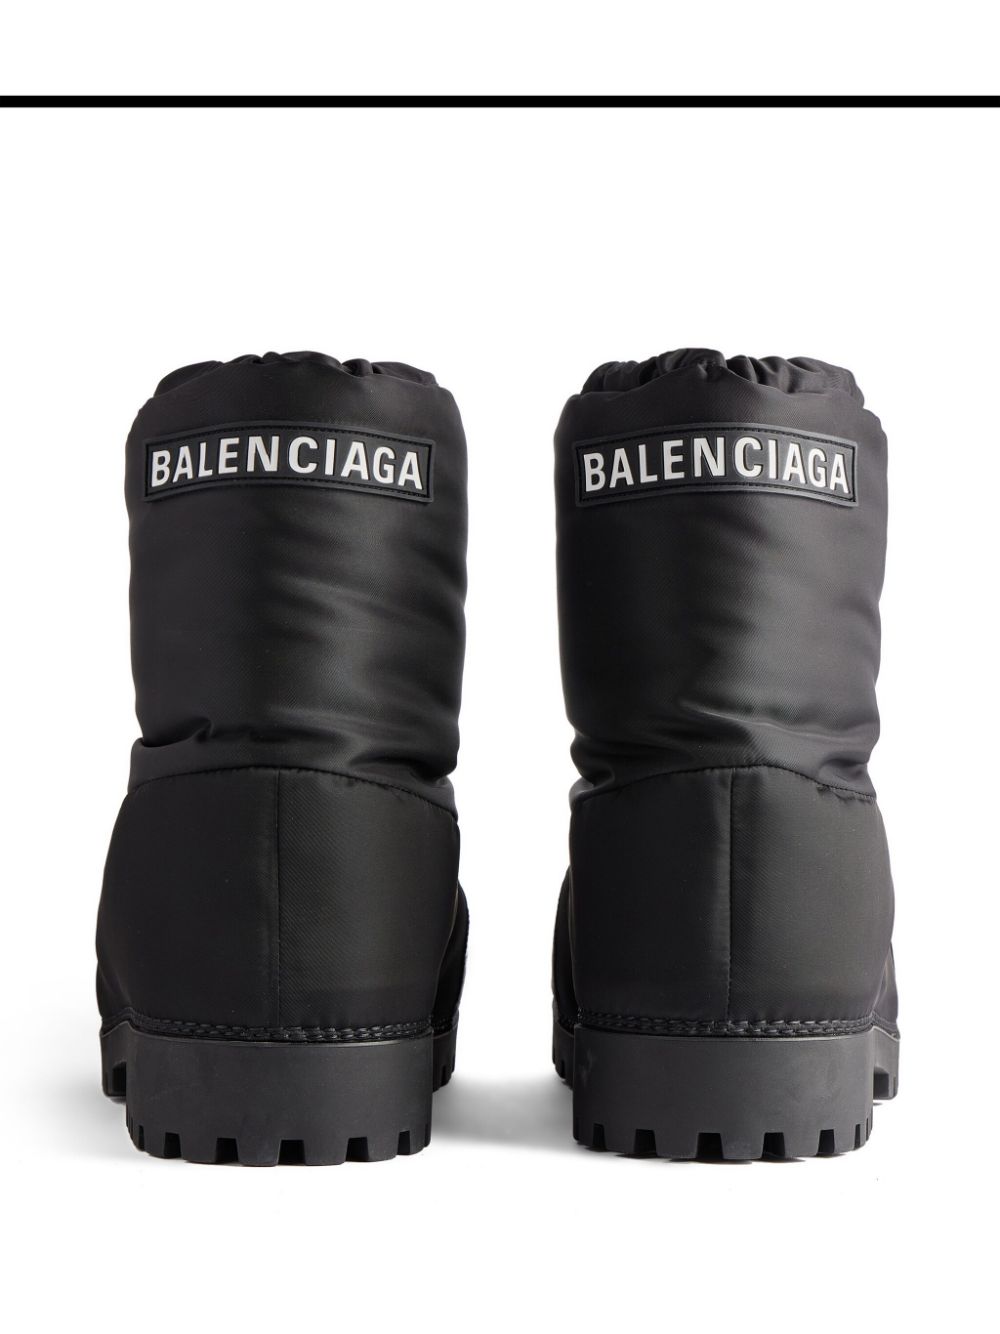 Balenciaga Men's Alaska Low Cold Weather Boots | Smart Closet